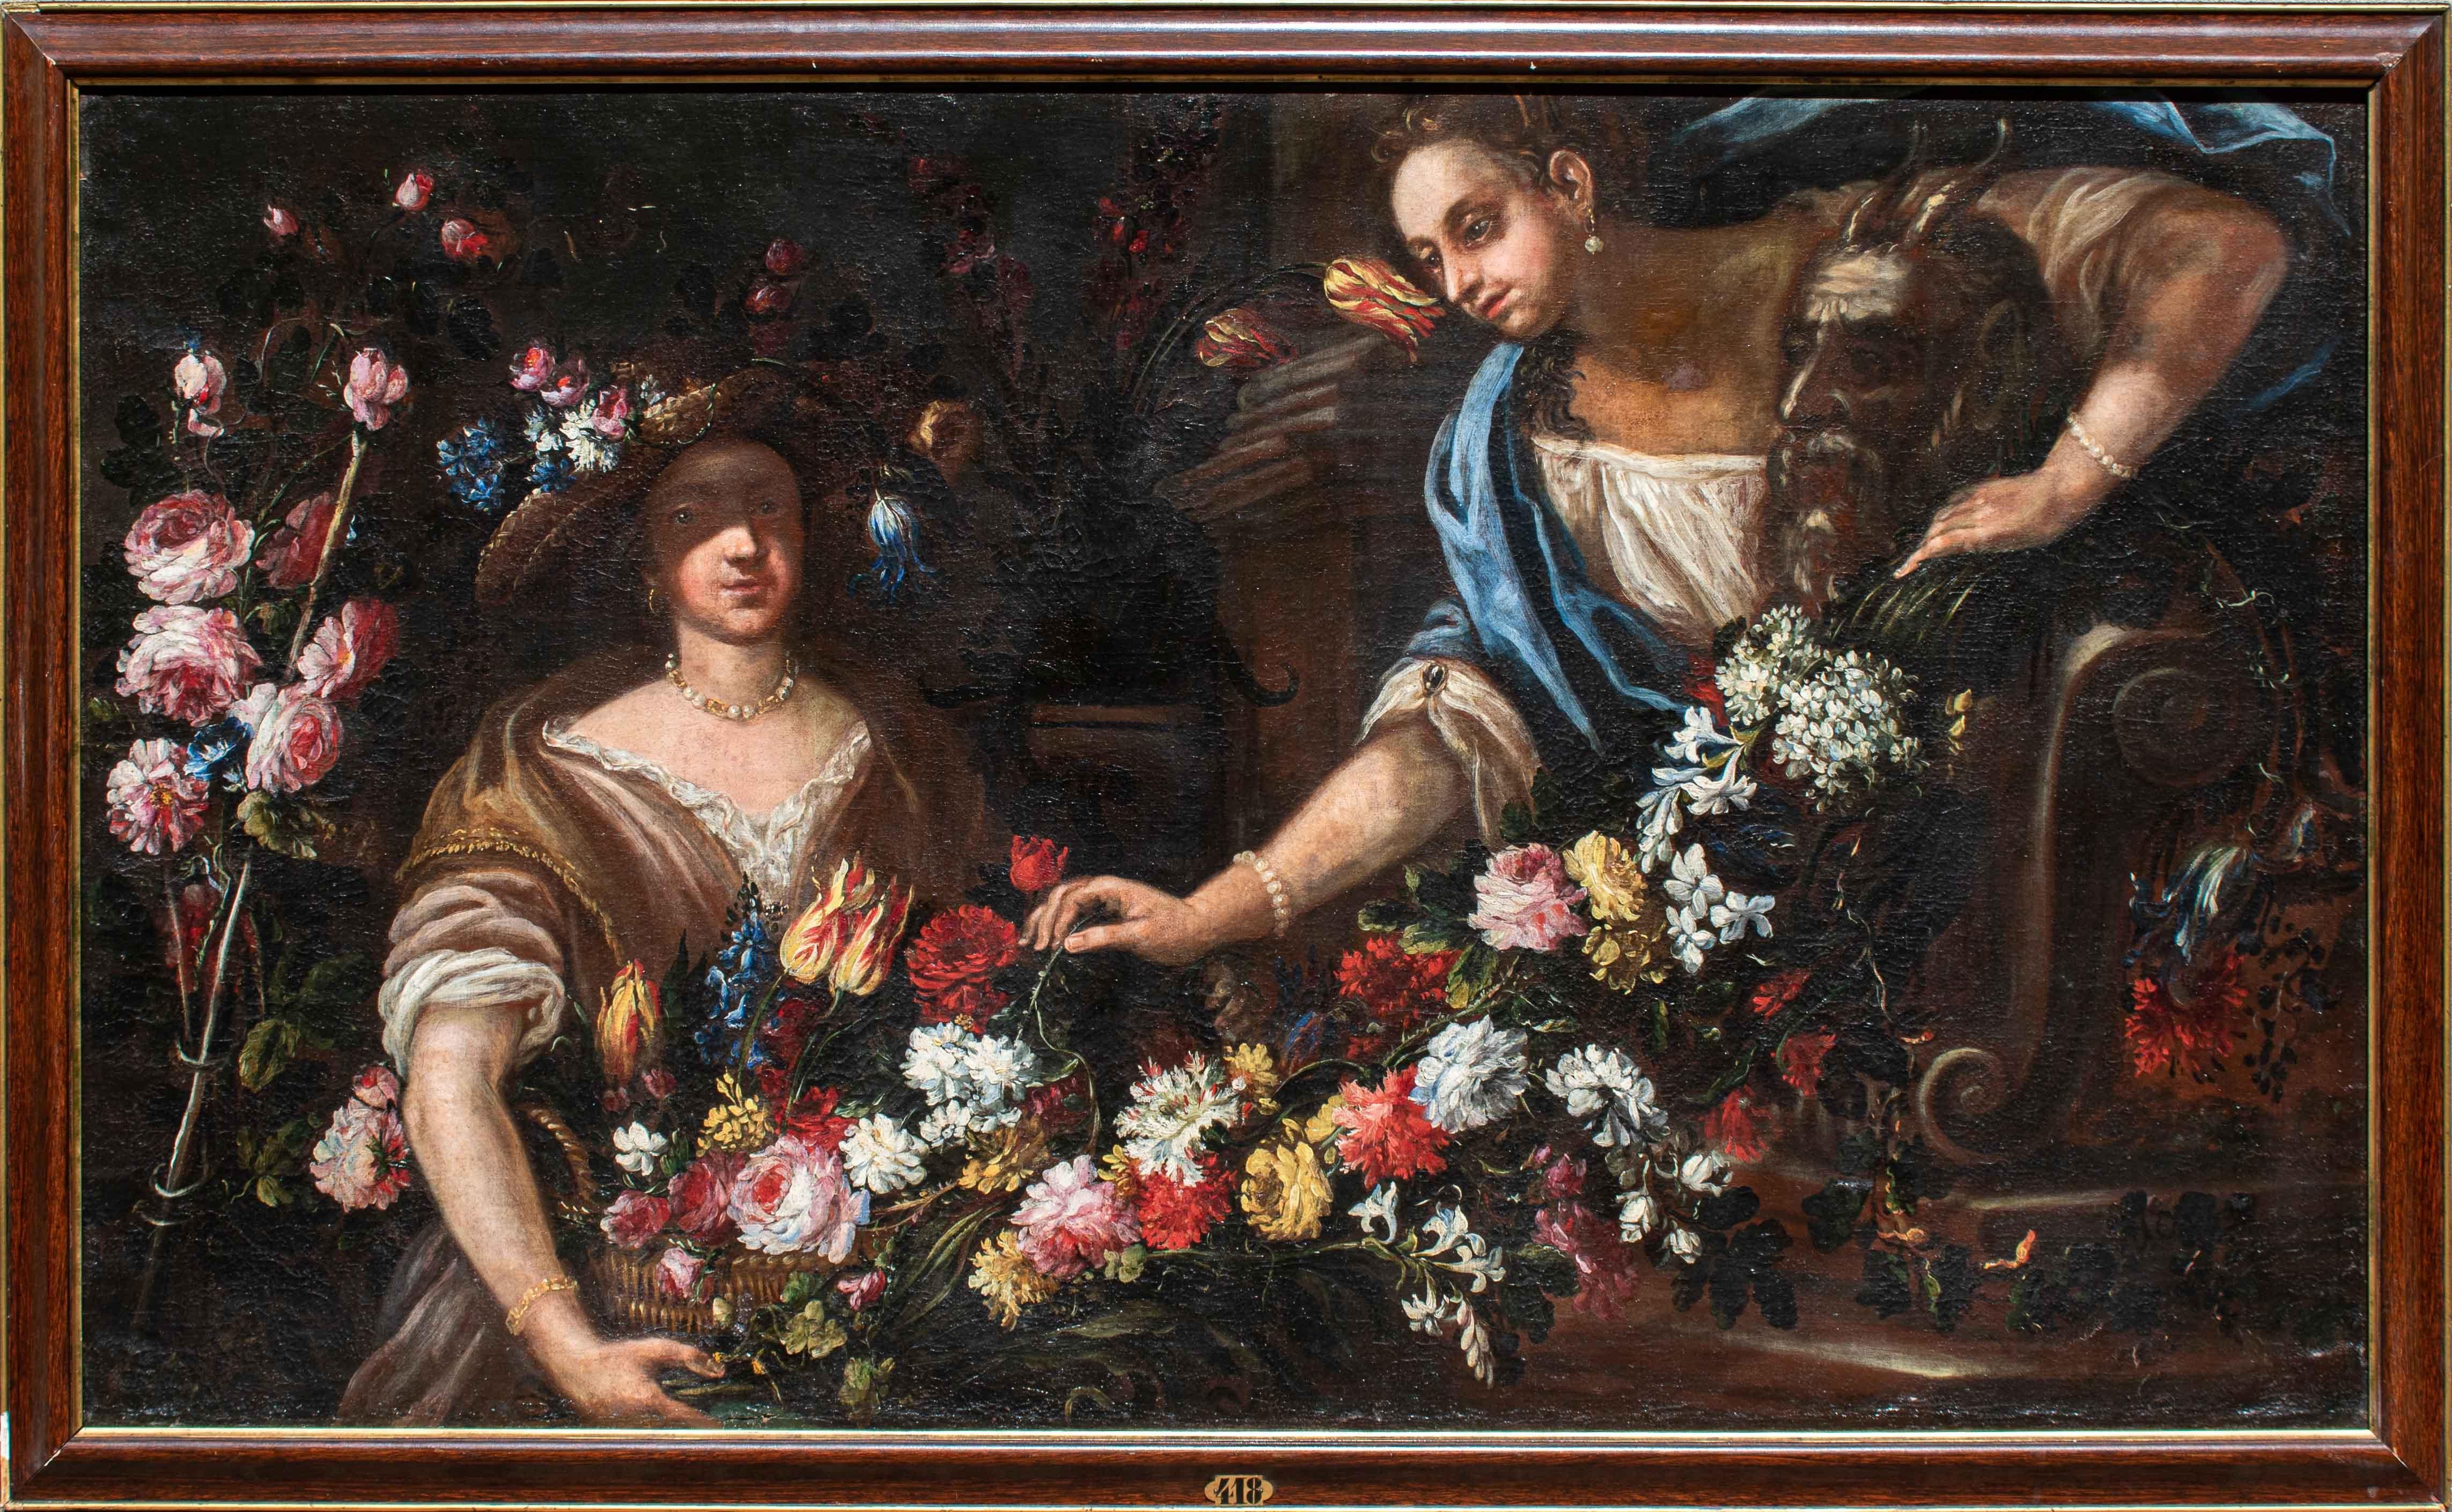 Felice Boselli (Piacenza, 1650 - Parma, 1732)

Stilleben mit zwei Frauen

Öl auf Leinwand, 98,5 x 164 cm

Rahmen 108 x 175,5 

Die raffinierte Komposition, die ein Blumenstillleben mit zwei Frauen darstellt, kann aufgrund stilistischer und formaler